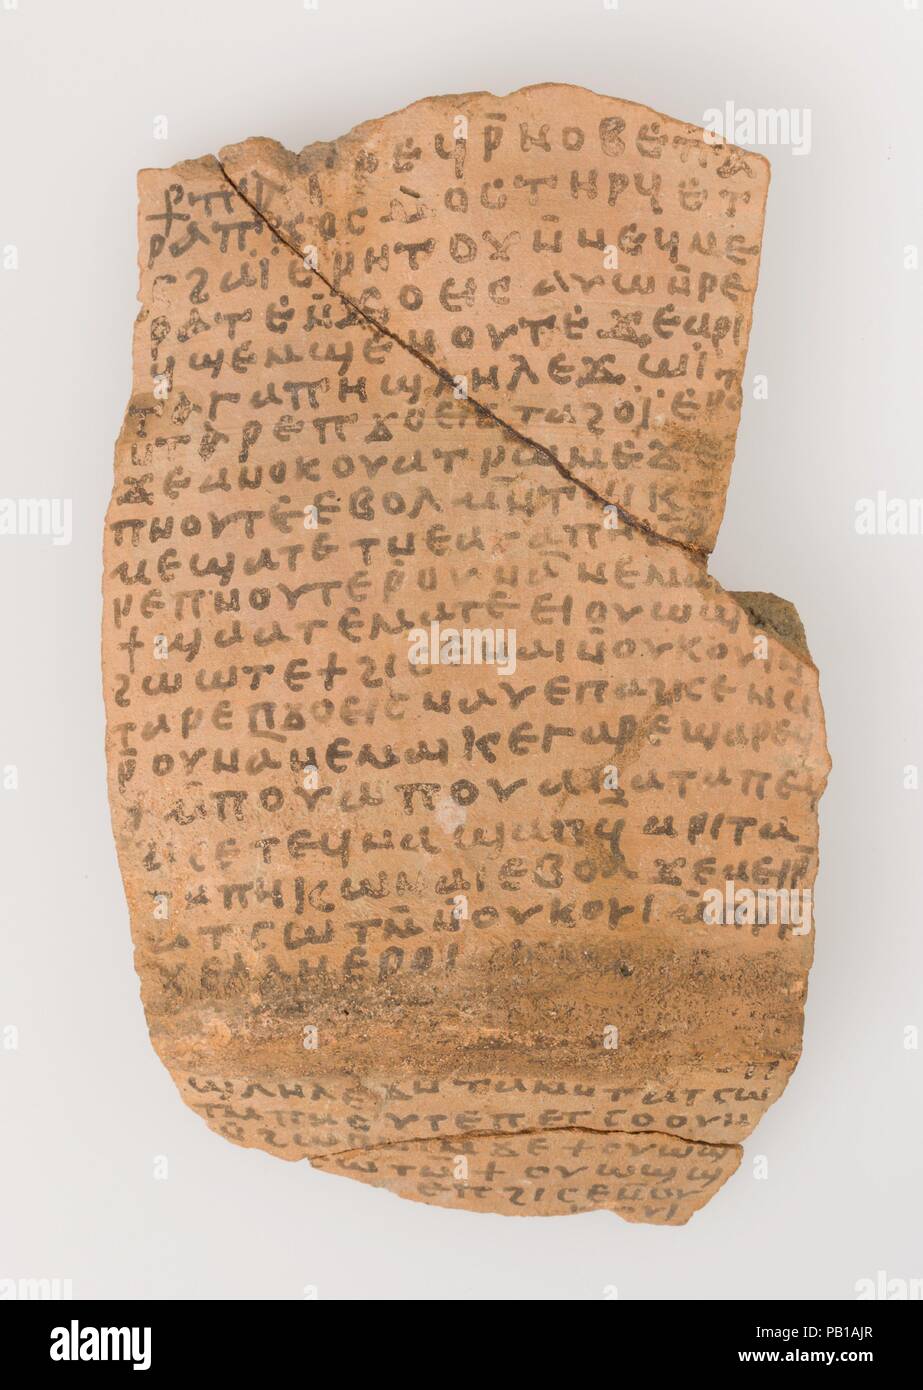 Ostrakon con una lettera da Giuseppe a--. Cultura: copto. Dimensioni: 6 3/16 x 3 7/8 × 1/2 in. (15,7 × 9,9 × 1,2 cm). Data: 580-640. Ostraca Ostraca sono testi scritti su rotte in ceramica, che sono stati impiegati quando la pergamena non era disponibile o troppo costoso. A Epifanio un gran numero di ostraca furono scoperti nel monastero, inclusi nella sua cumuli di rifiuti; essi registrano i versi biblici, documenti legali, Sermoni, conti finanziari, testi di scuola e lettere di richiesta di assistenza e preghiere. Alcune rivelano che anche a sud del confine dell'Impero, le persone erano ancora a conoscenza di eventi in Foto Stock